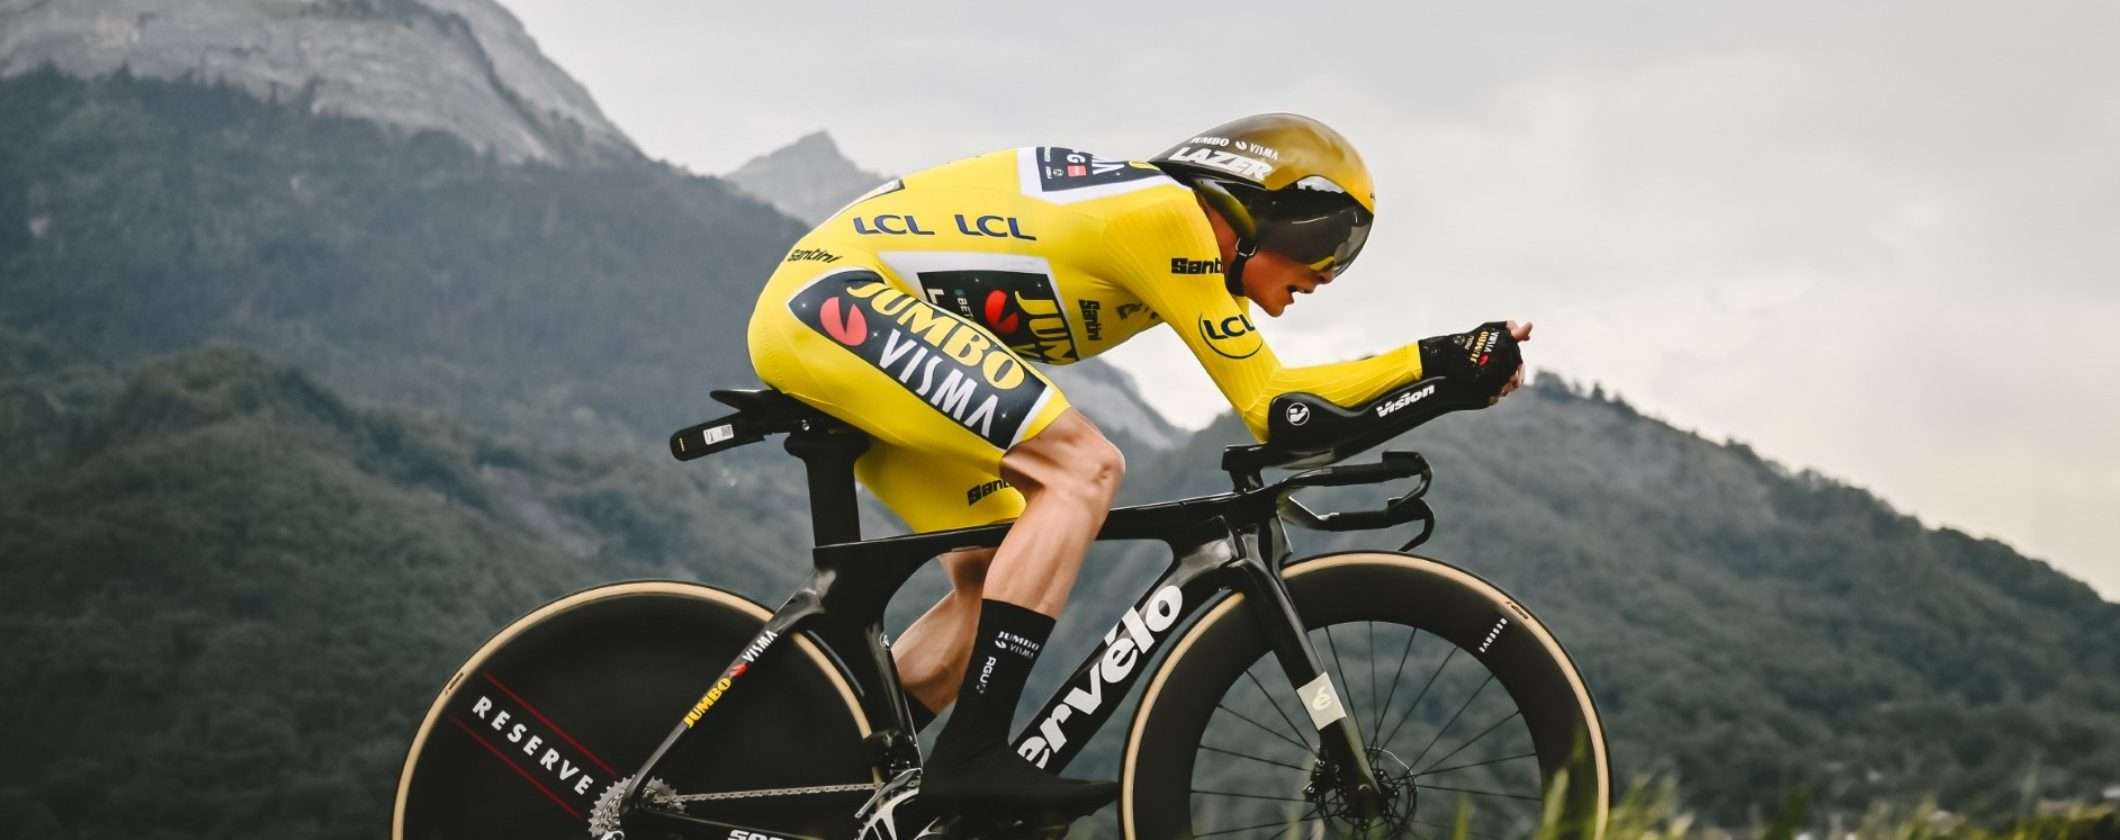 Guarda l'ultima tappa del Tour de France GRATIS in streaming